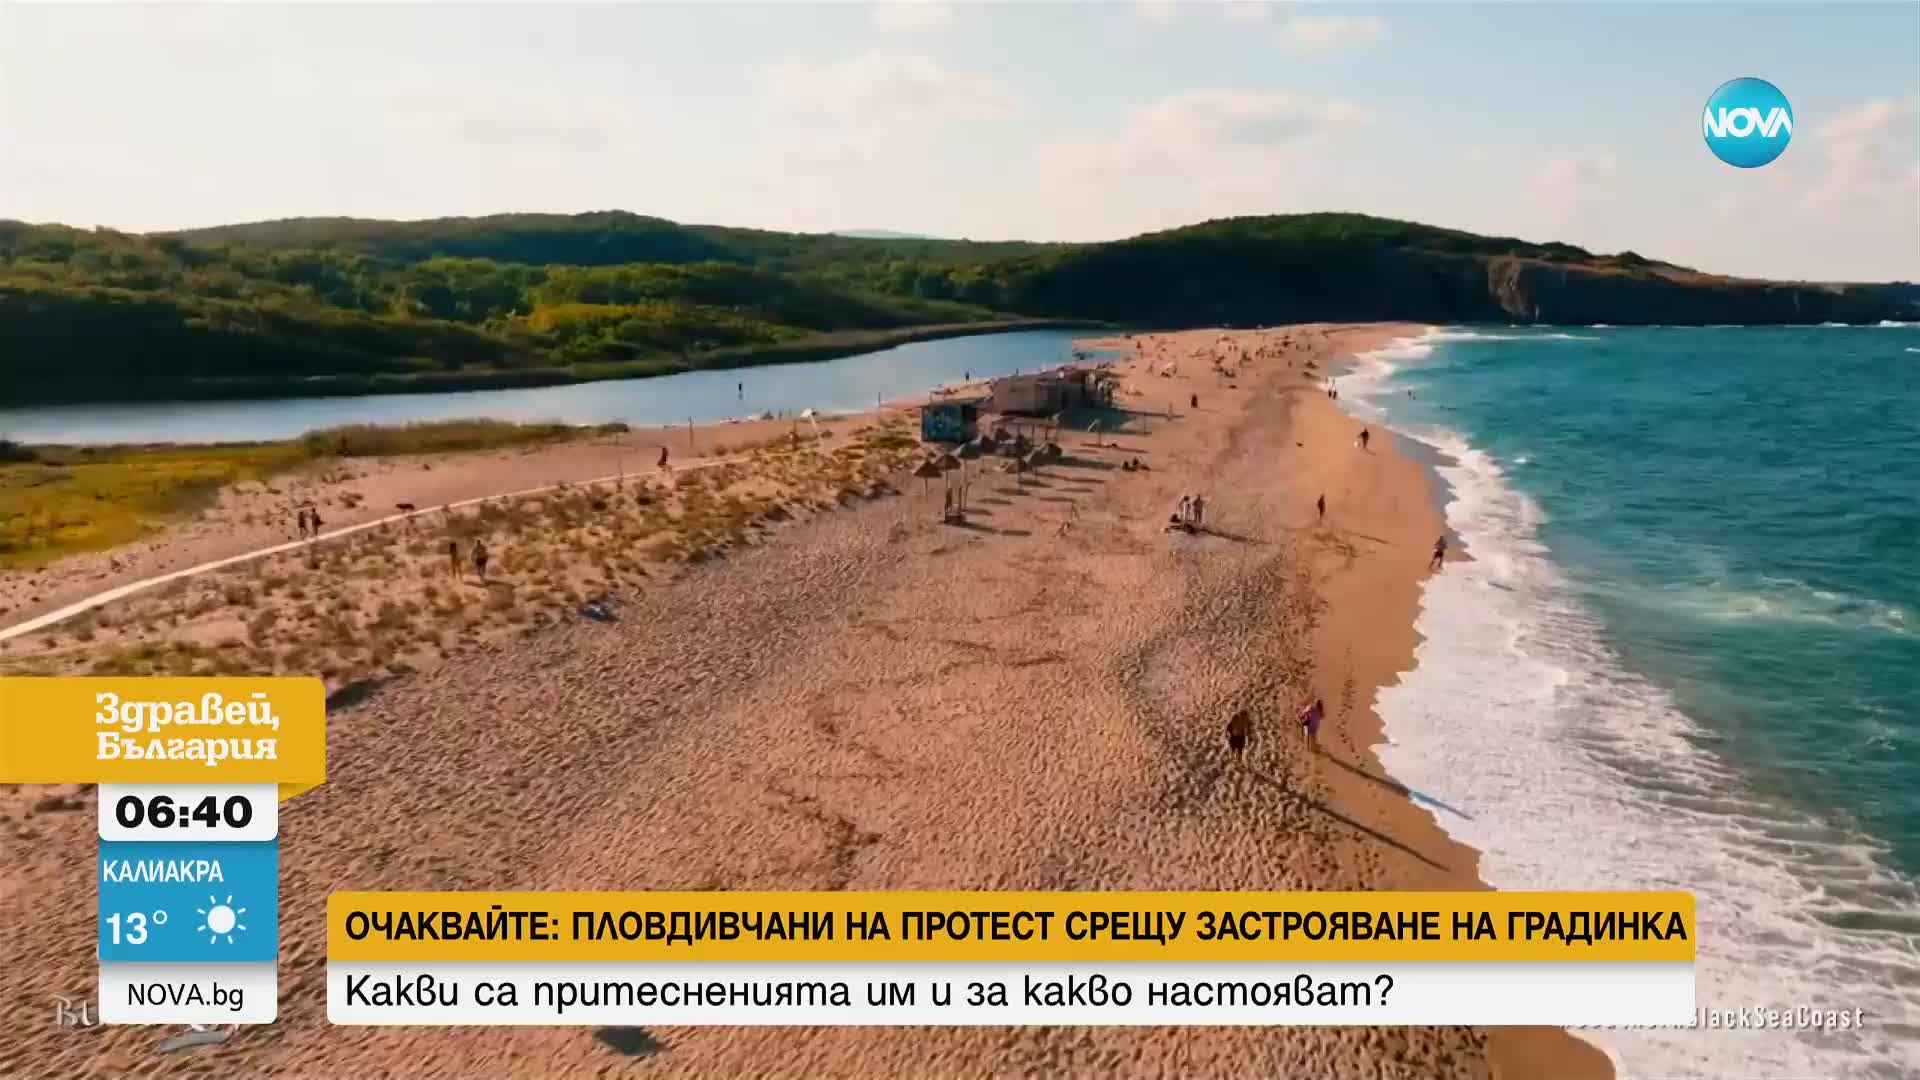 Южното ни Черноморие с нов рекламен клип